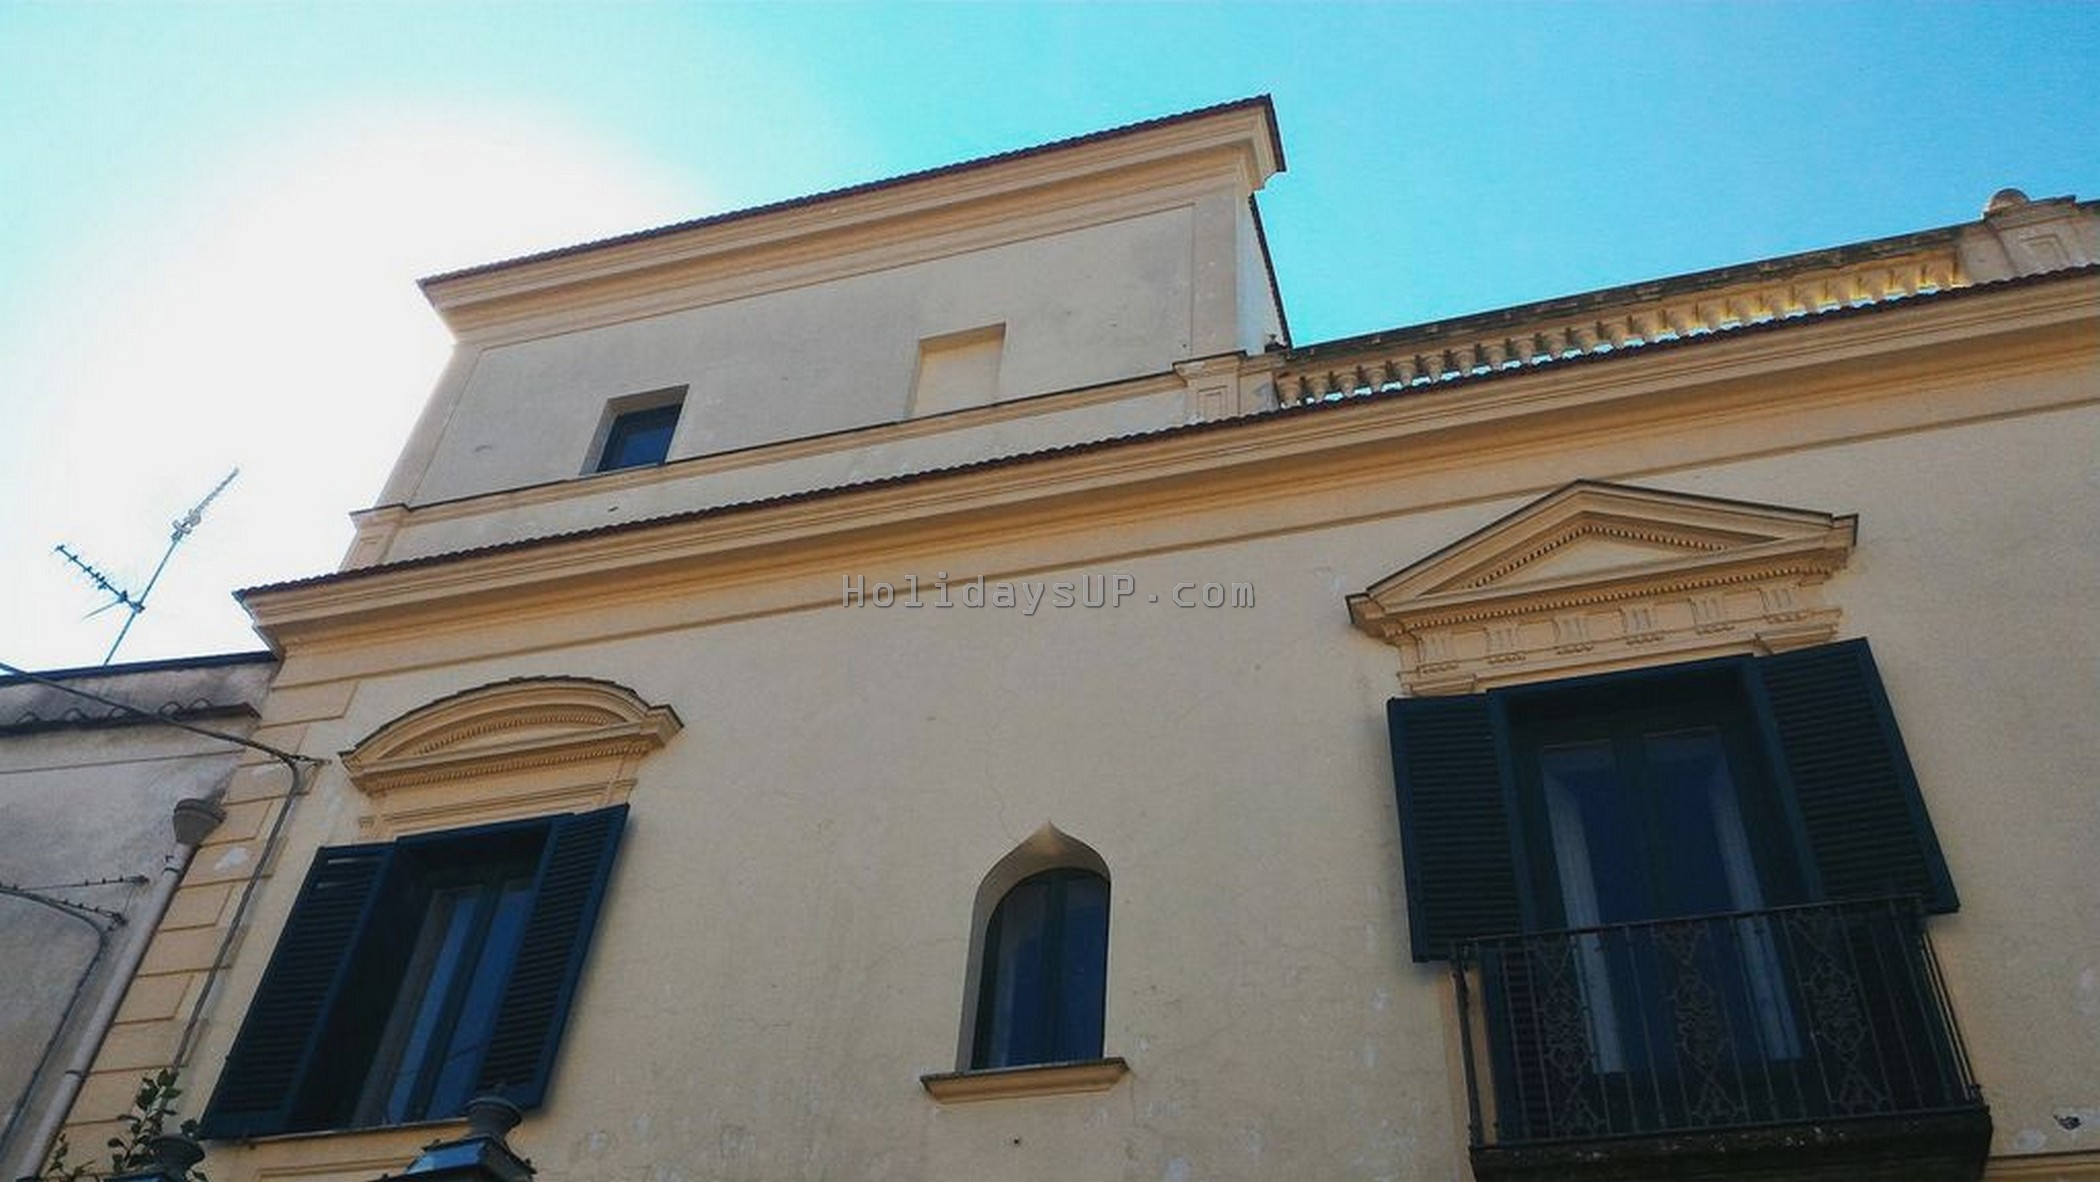 Villa with apartmentand barone room located in Schiazzano Sorrentocoast